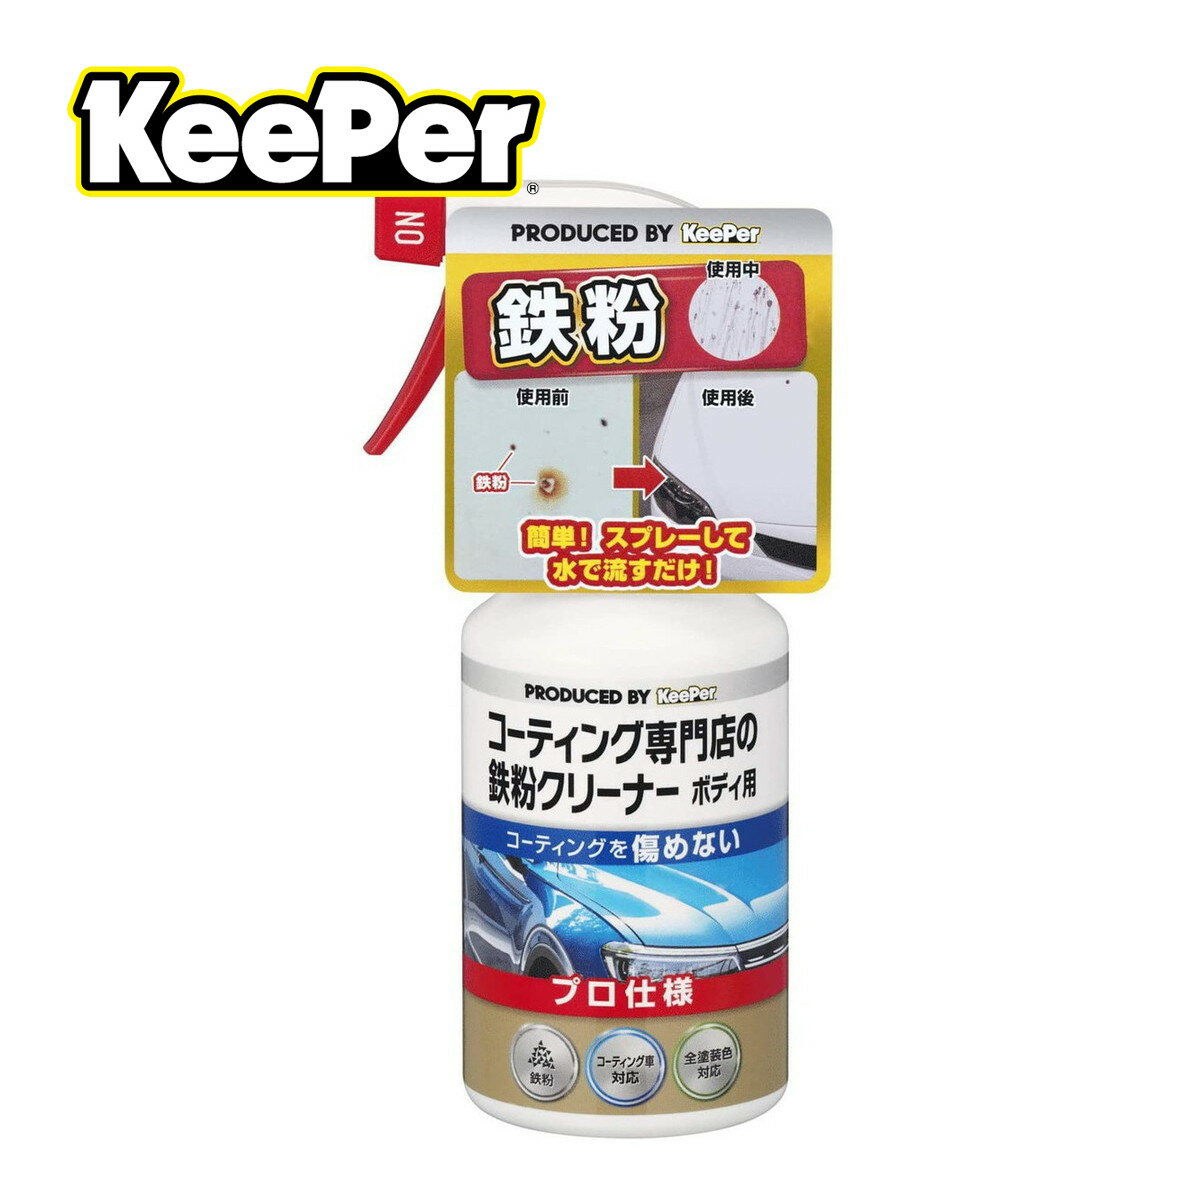 商品名：エステー KEEPER コーティング専門店の鉄粉クリーナー ボディ用 300ml内容量：300mlJANコード：4541464150079発売元、製造元、輸入元又は販売元：KeePer技研原産国：日本商品番号：101-51234商品説明ボディに付着している鉄粉を、化学的な力で強力に洗浄します。中性タイプなので、塗装面のコーティングを落としません。コーティング車対応全塗装色対応プロ仕様広告文責：アットライフ株式会社TEL 050-3196-1510 ※商品パッケージは変更の場合あり。メーカー欠品または完売の際、キャンセルをお願いすることがあります。ご了承ください。